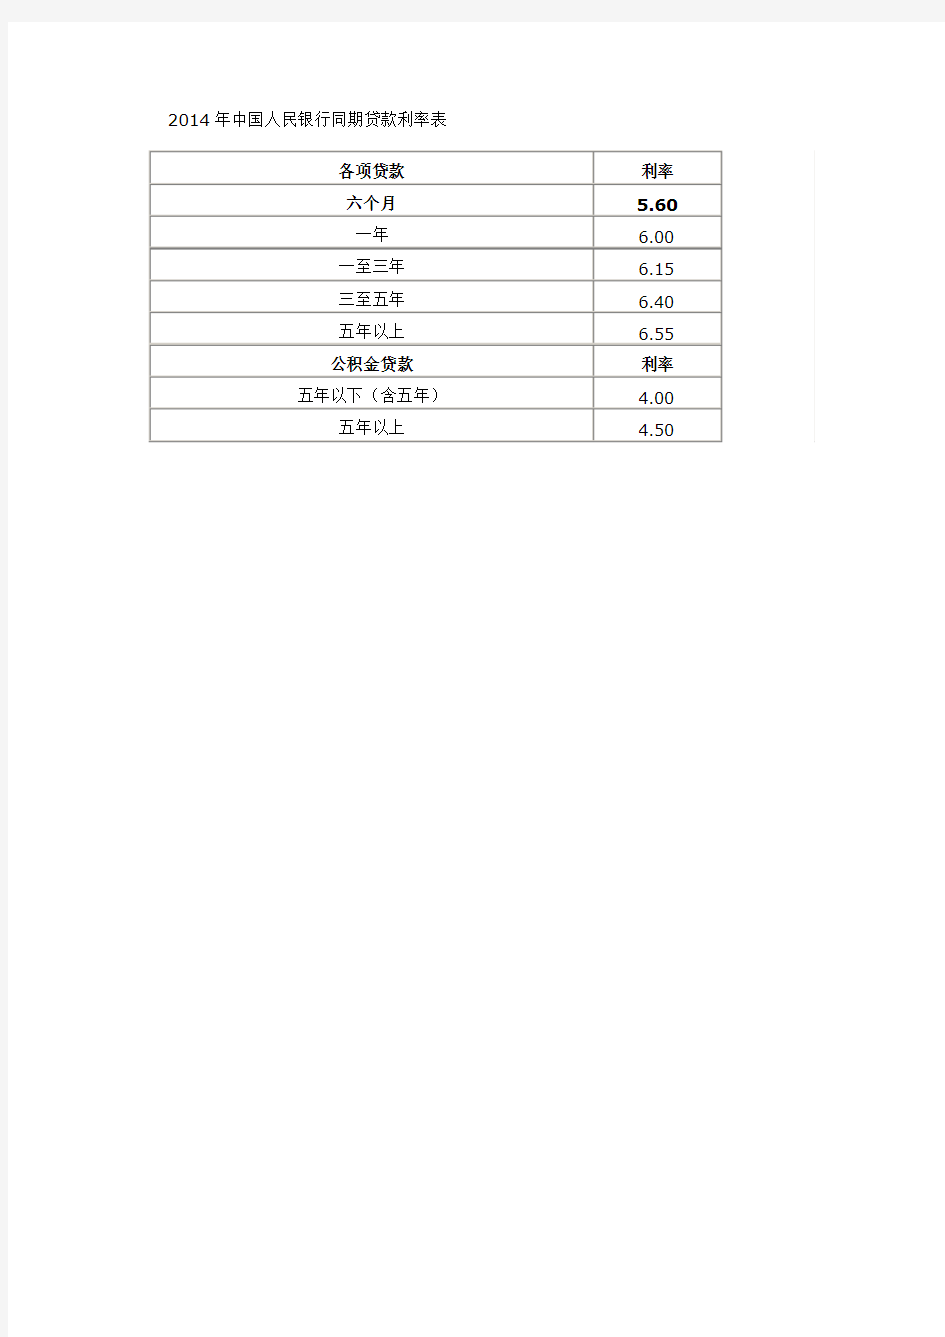 2014年中国人民银行同期贷款利率表